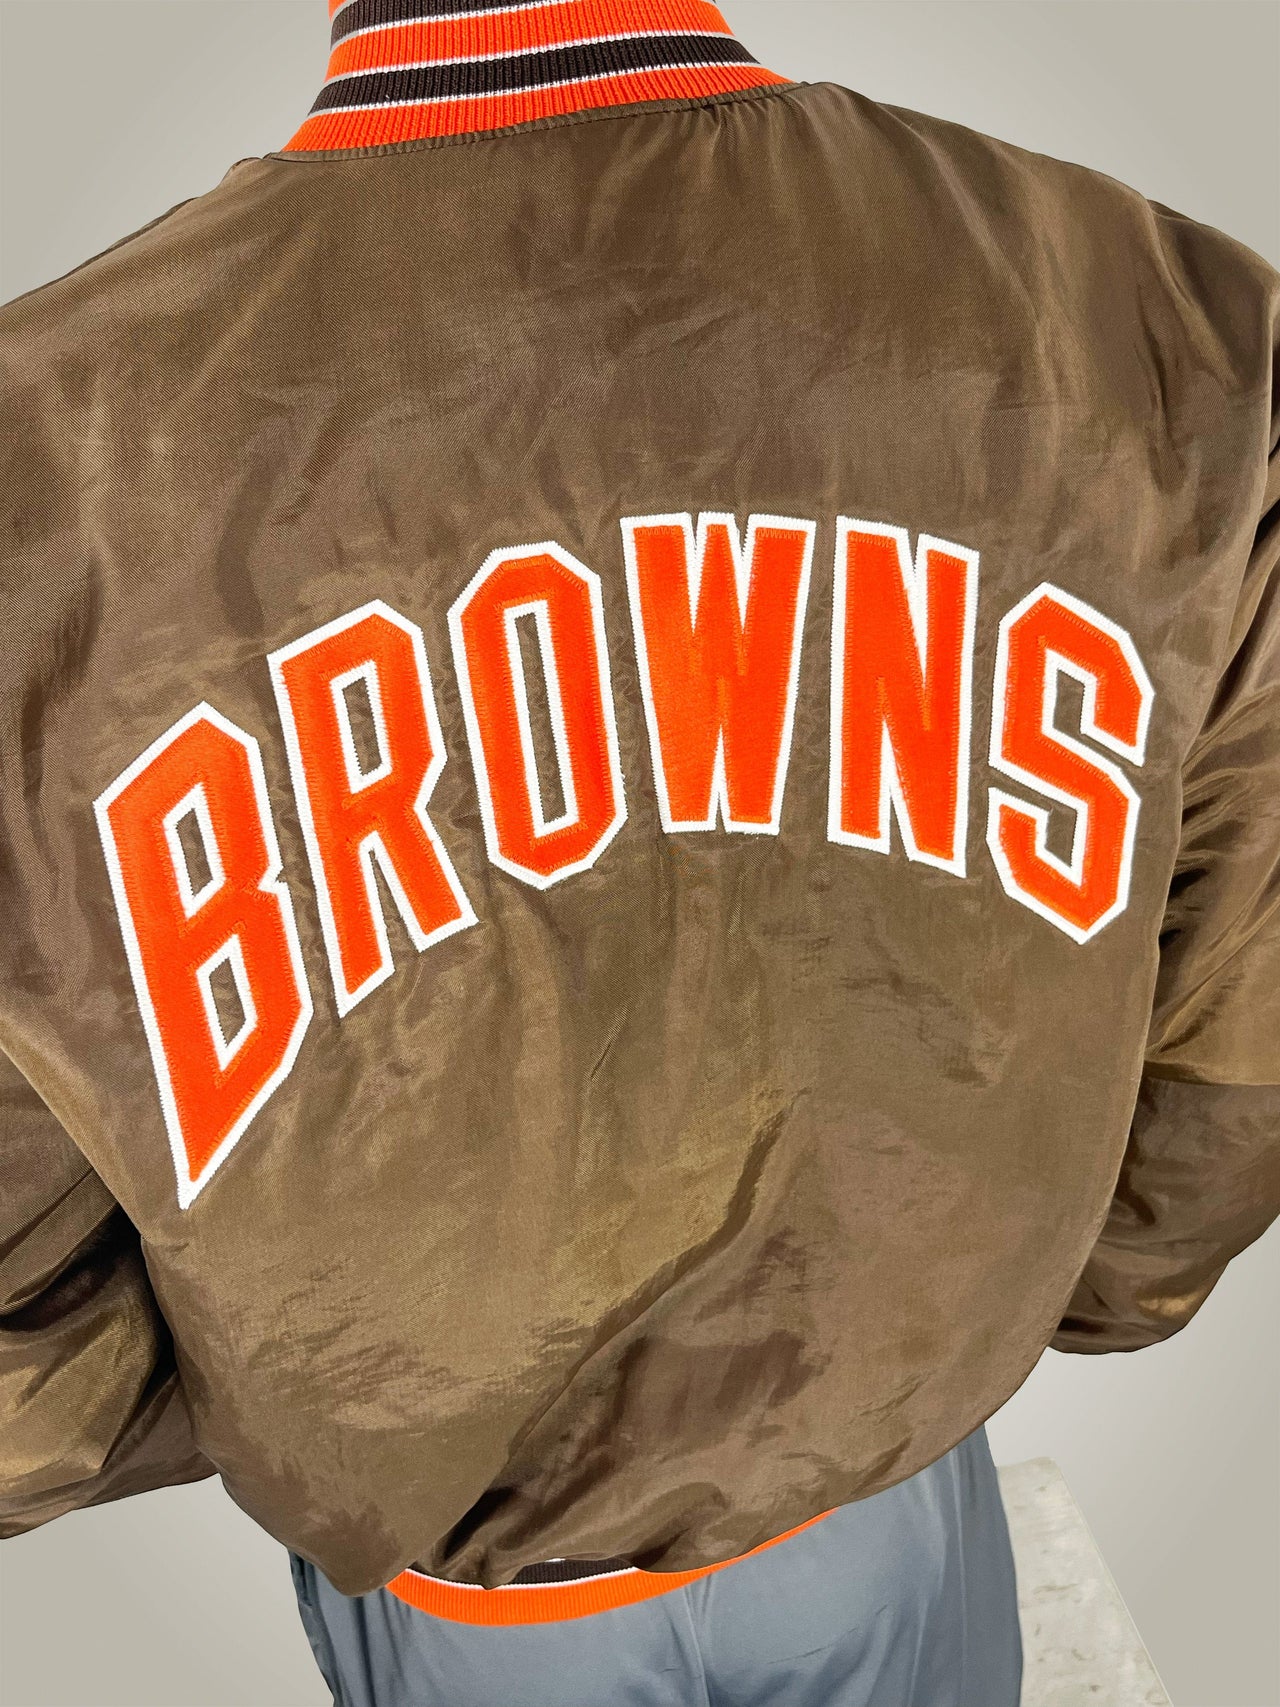 Gameday Grails Jacket Large Vintage Cleveland Browns Jacket